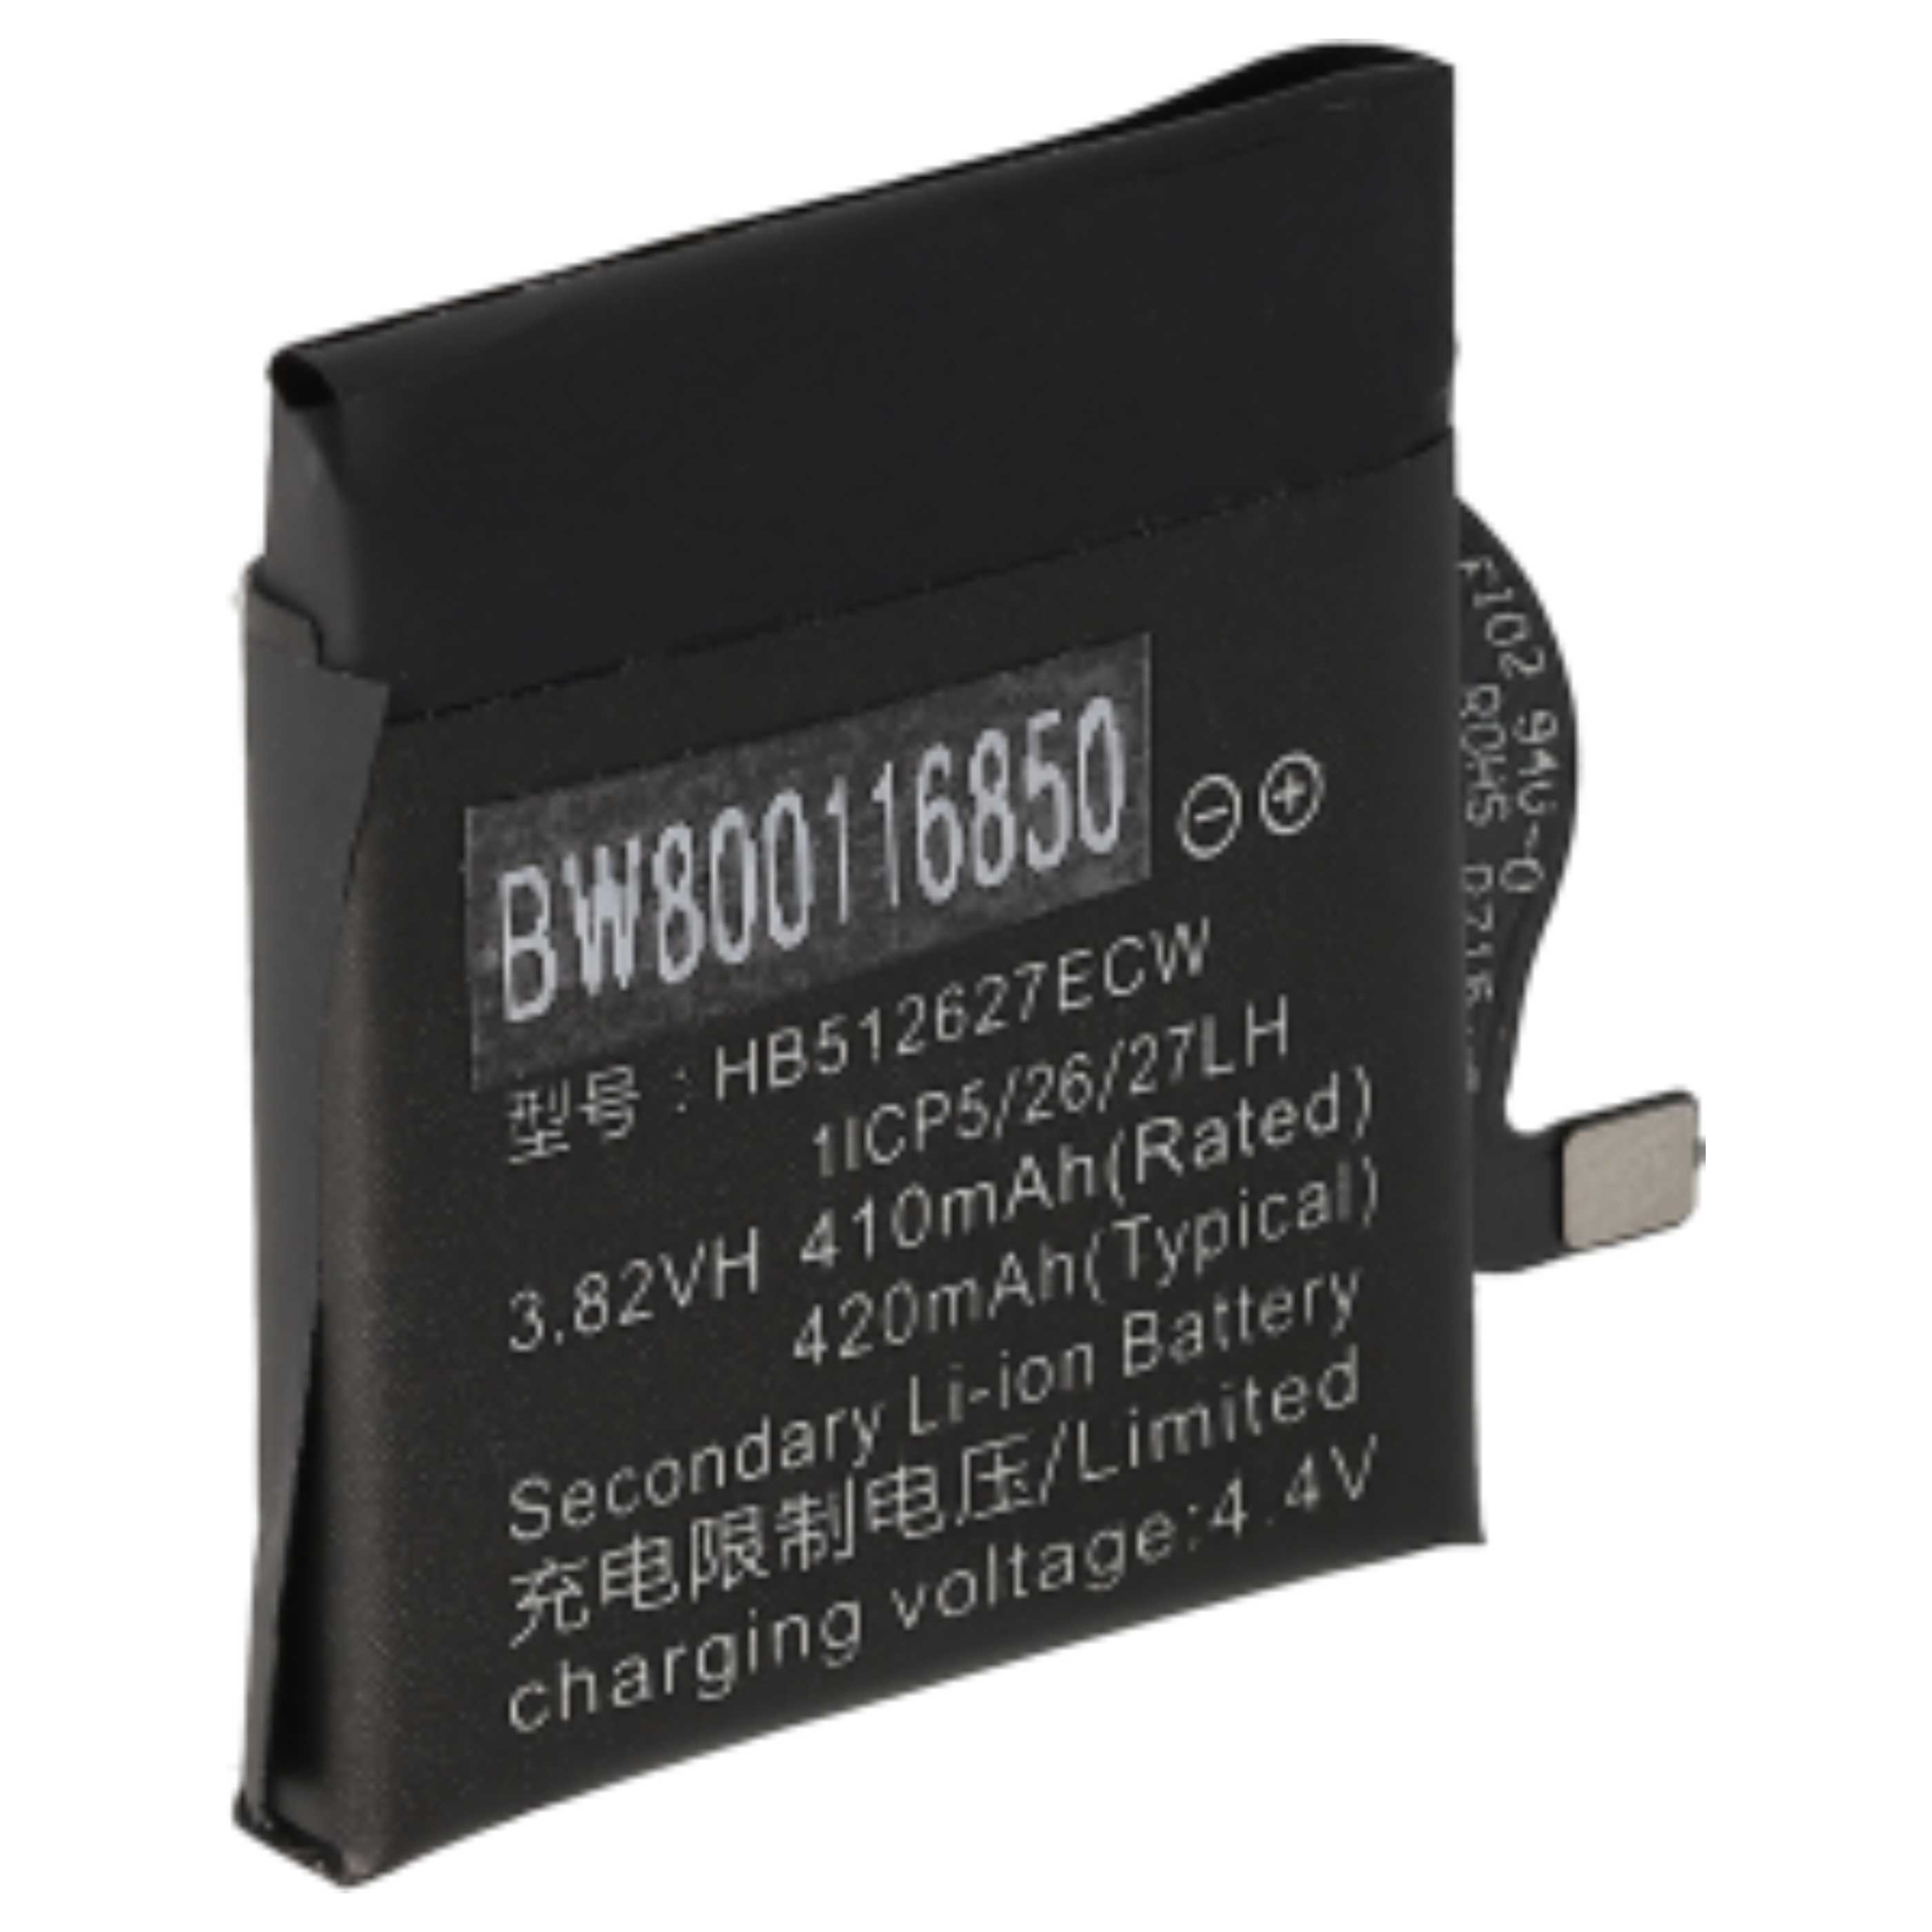 Batterie remplace Huawei HB512627ECW pour montre connectée - 410mAh 3,8V Li-polymère